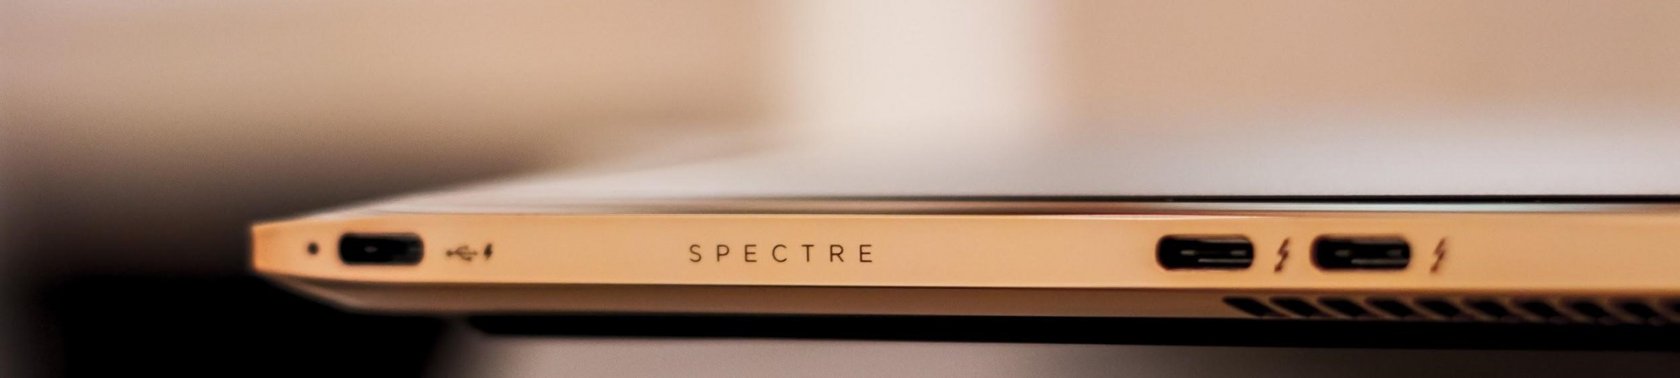 Технологии и дизайн в одном устройстве. Ноутбук HP Spectre 13 - 31